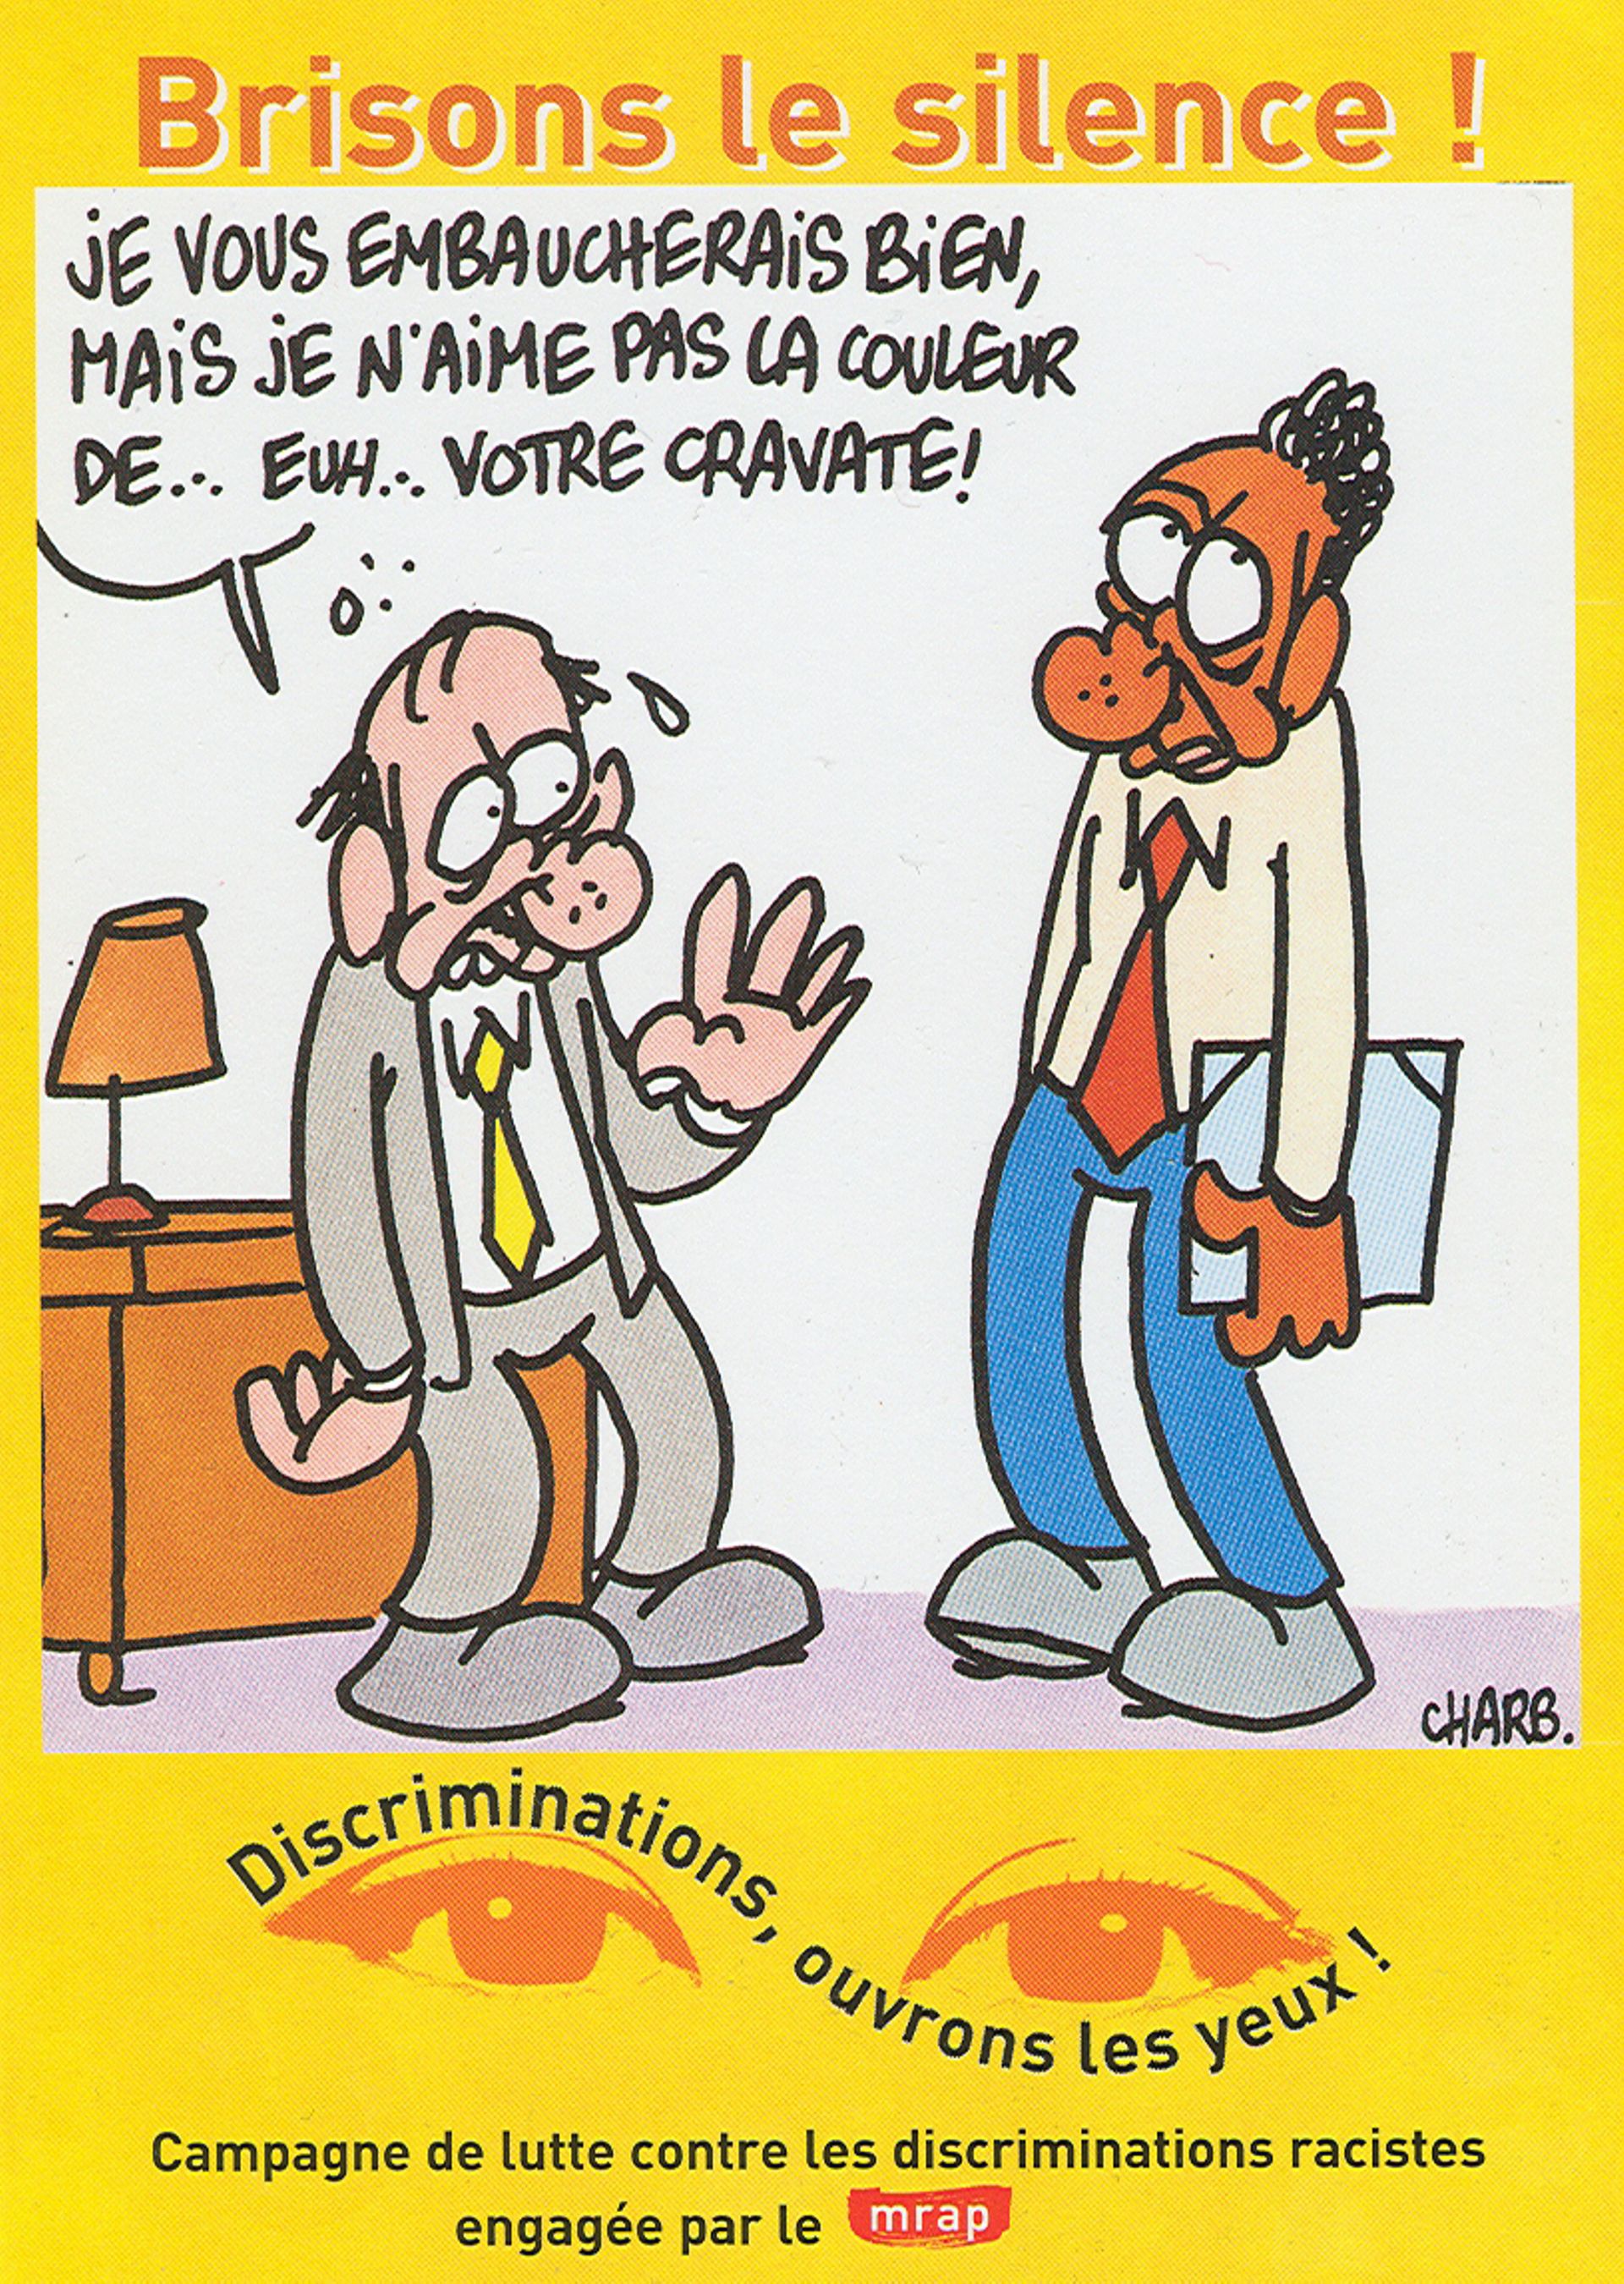 Une carte postale réalisée en 2000 par Charb pour le Mouvement contre le racisme et pour l'amitié entre les peuples (mrap).